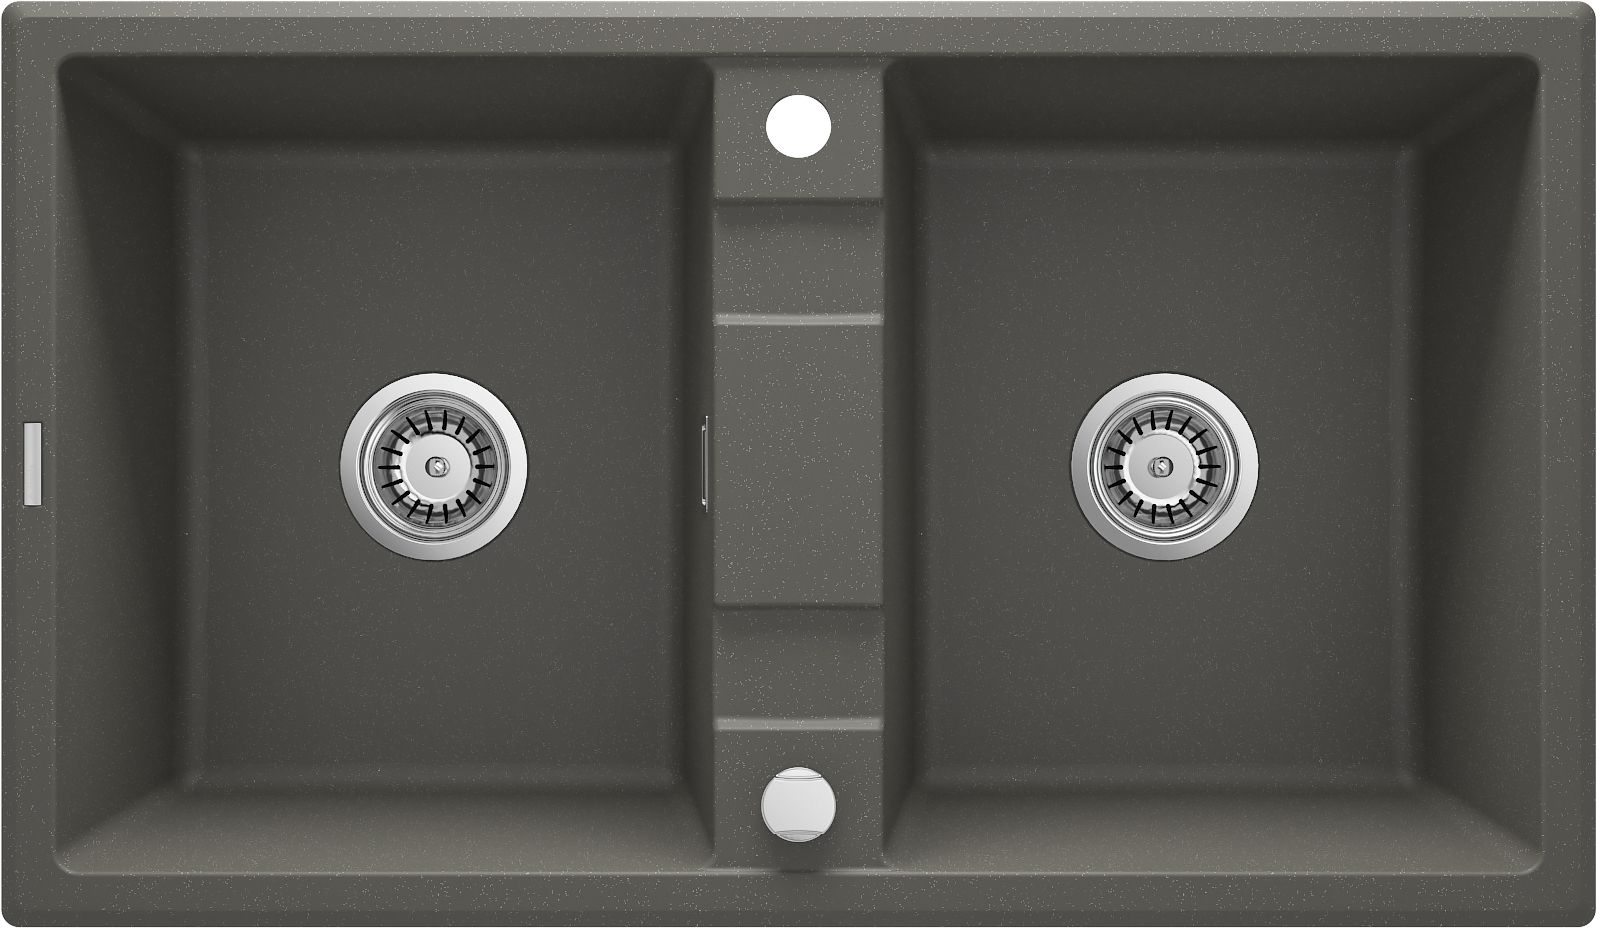 Granite sink, 2-bowl - ZQE_T203 - Główne zdjęcie produktowe